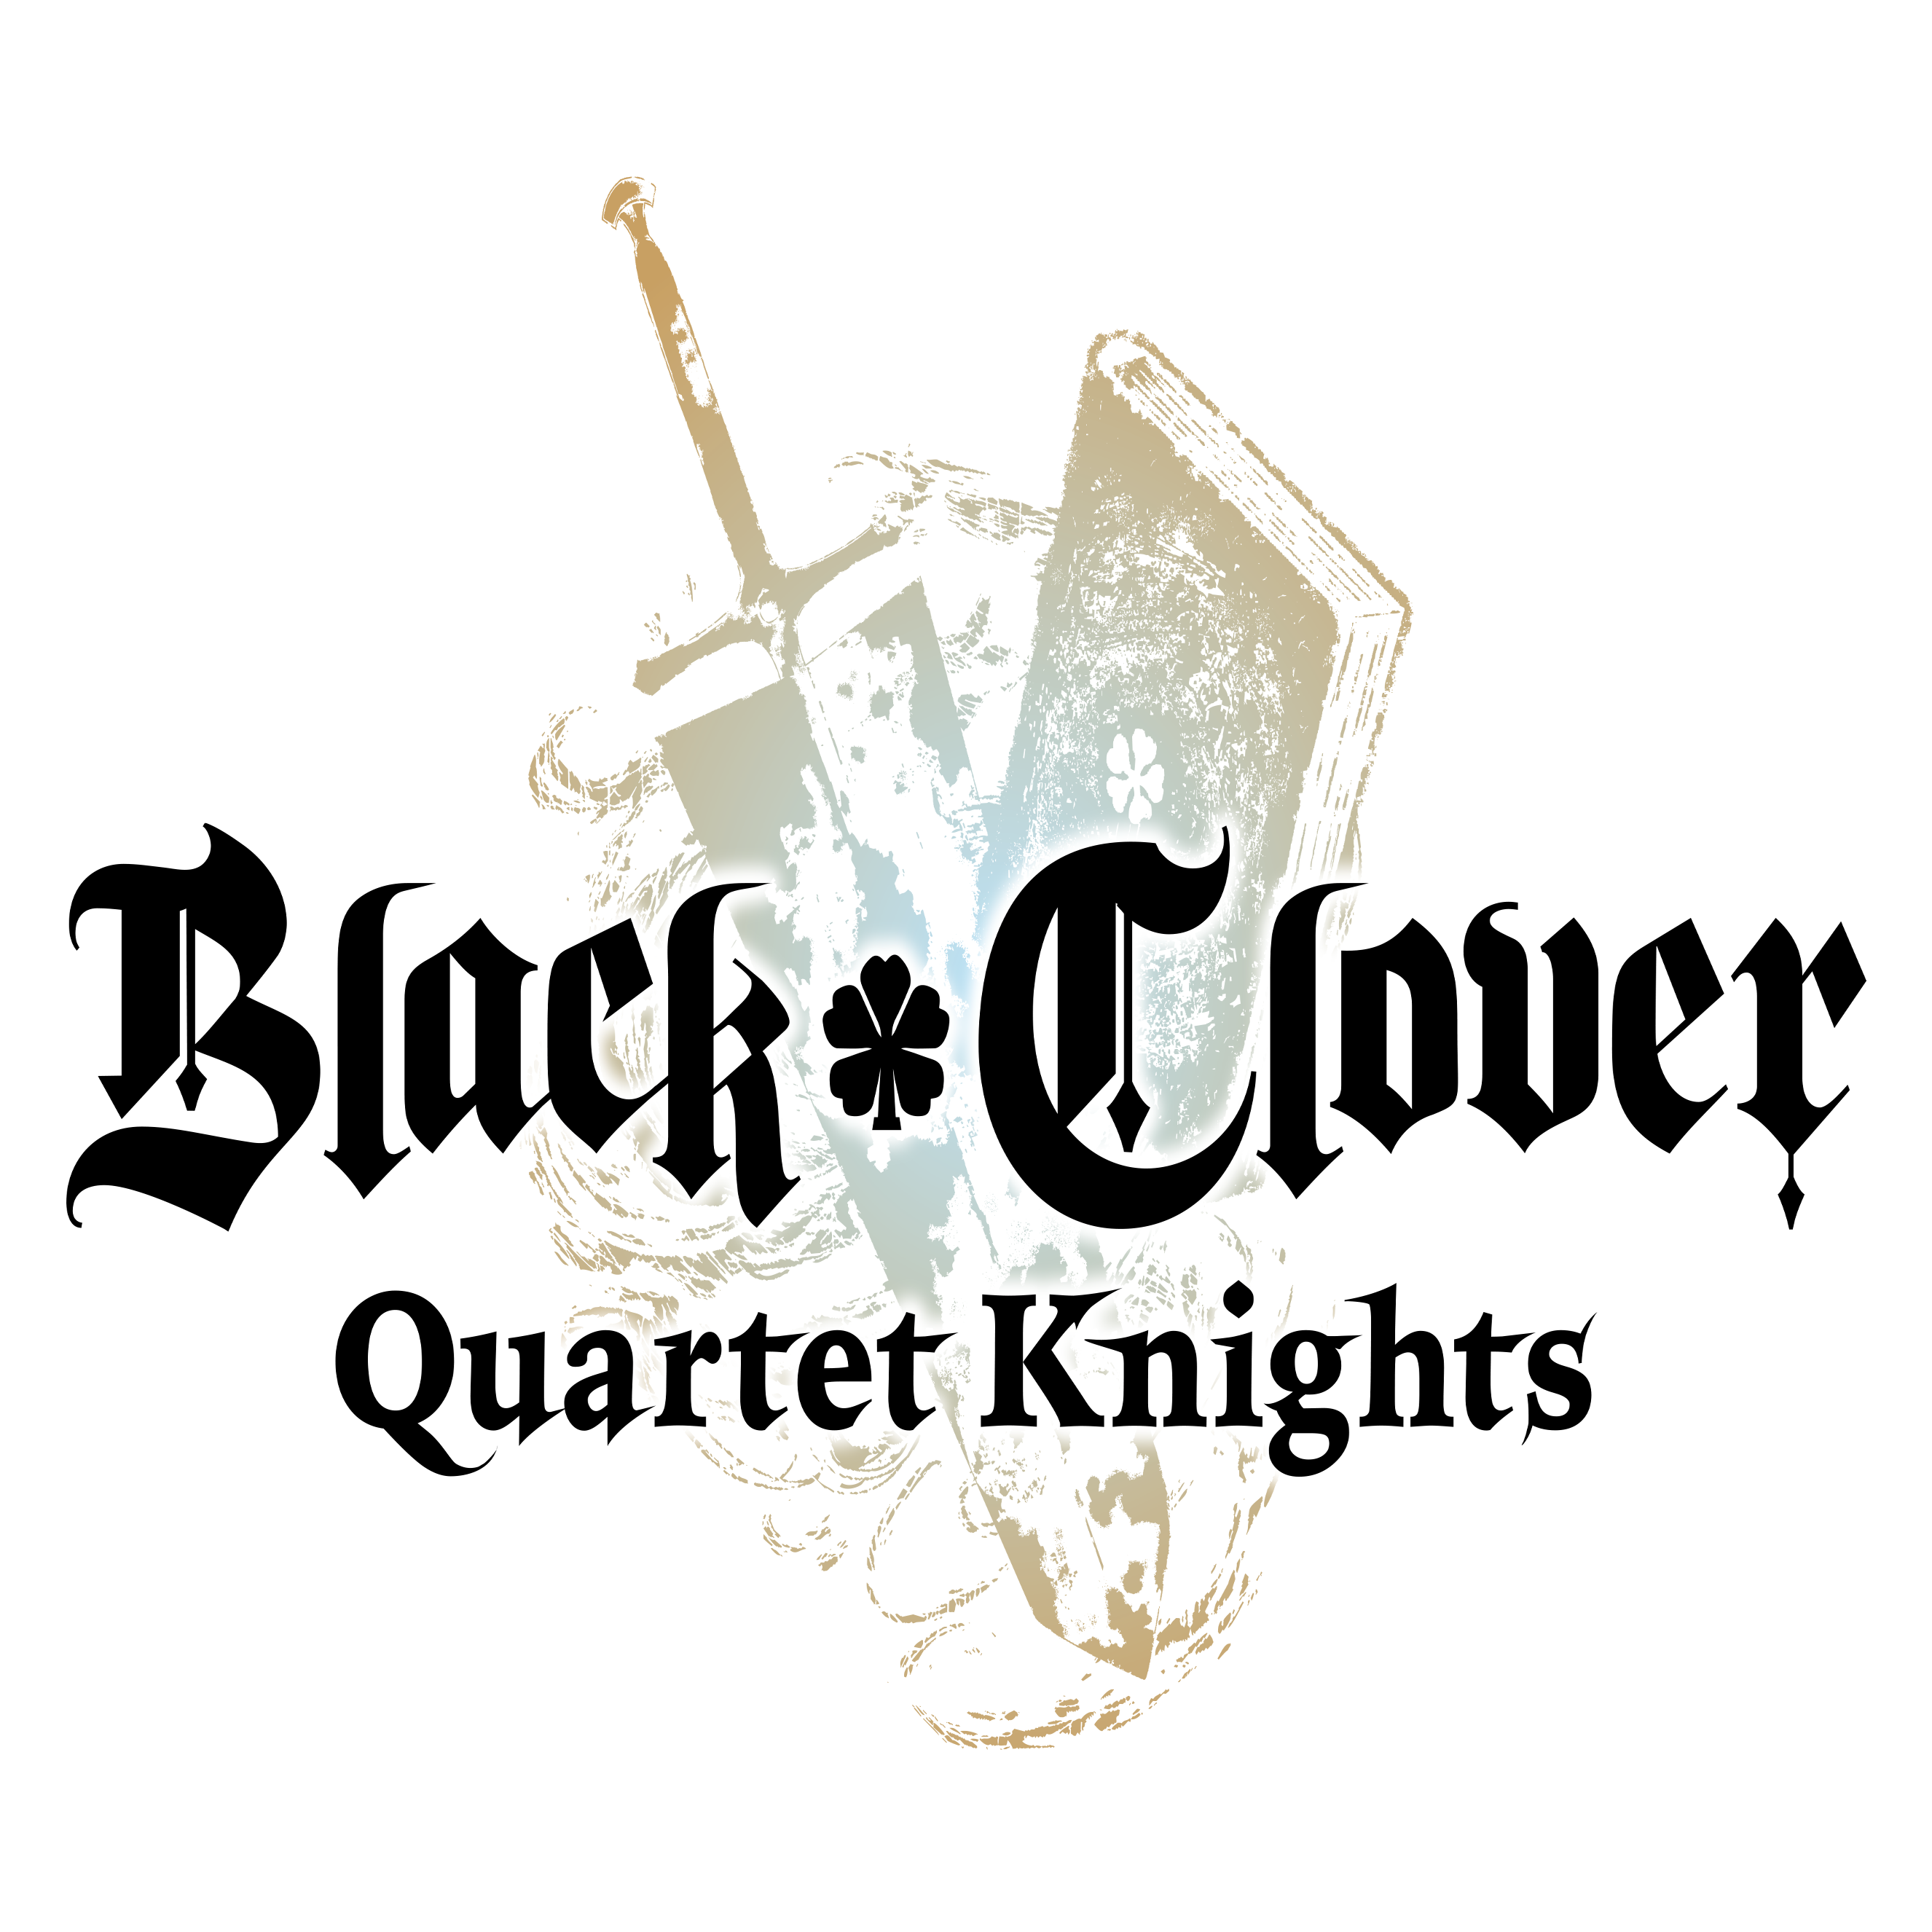 Black Clover Quartet Knights trailer demonstreert een potje Treasure Hunt